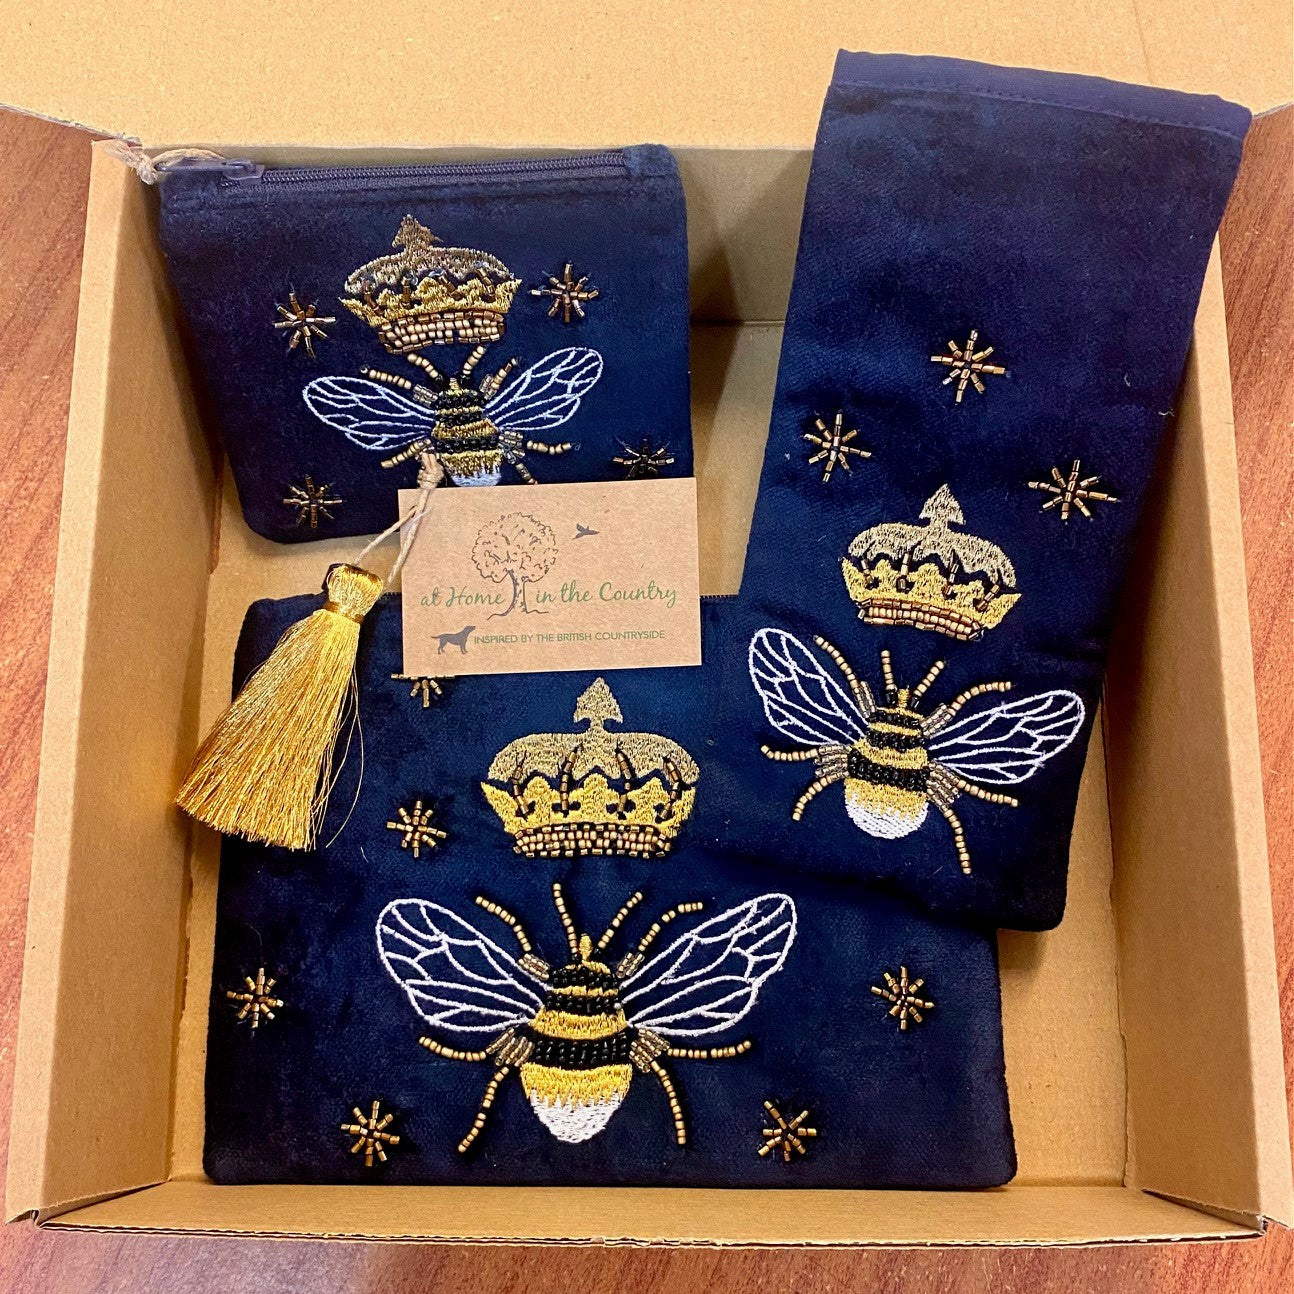 The Royal Bee Cotton Velvet Gift Set